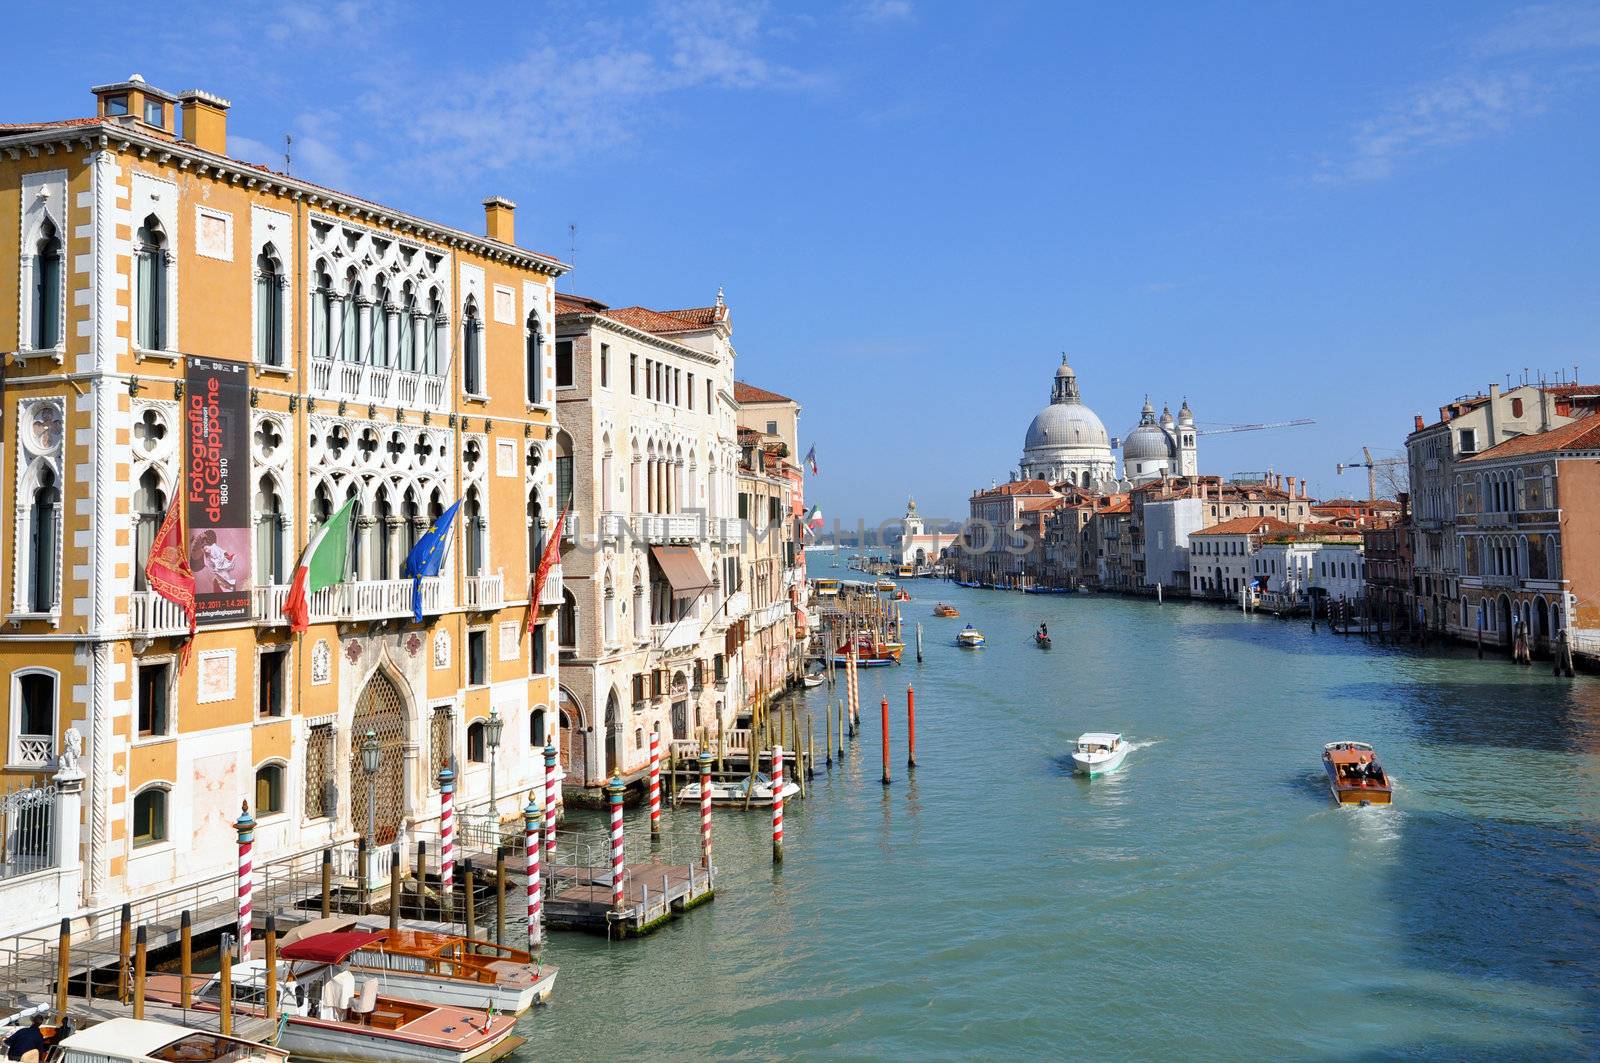 Venezia Canal Grande by rmarinello